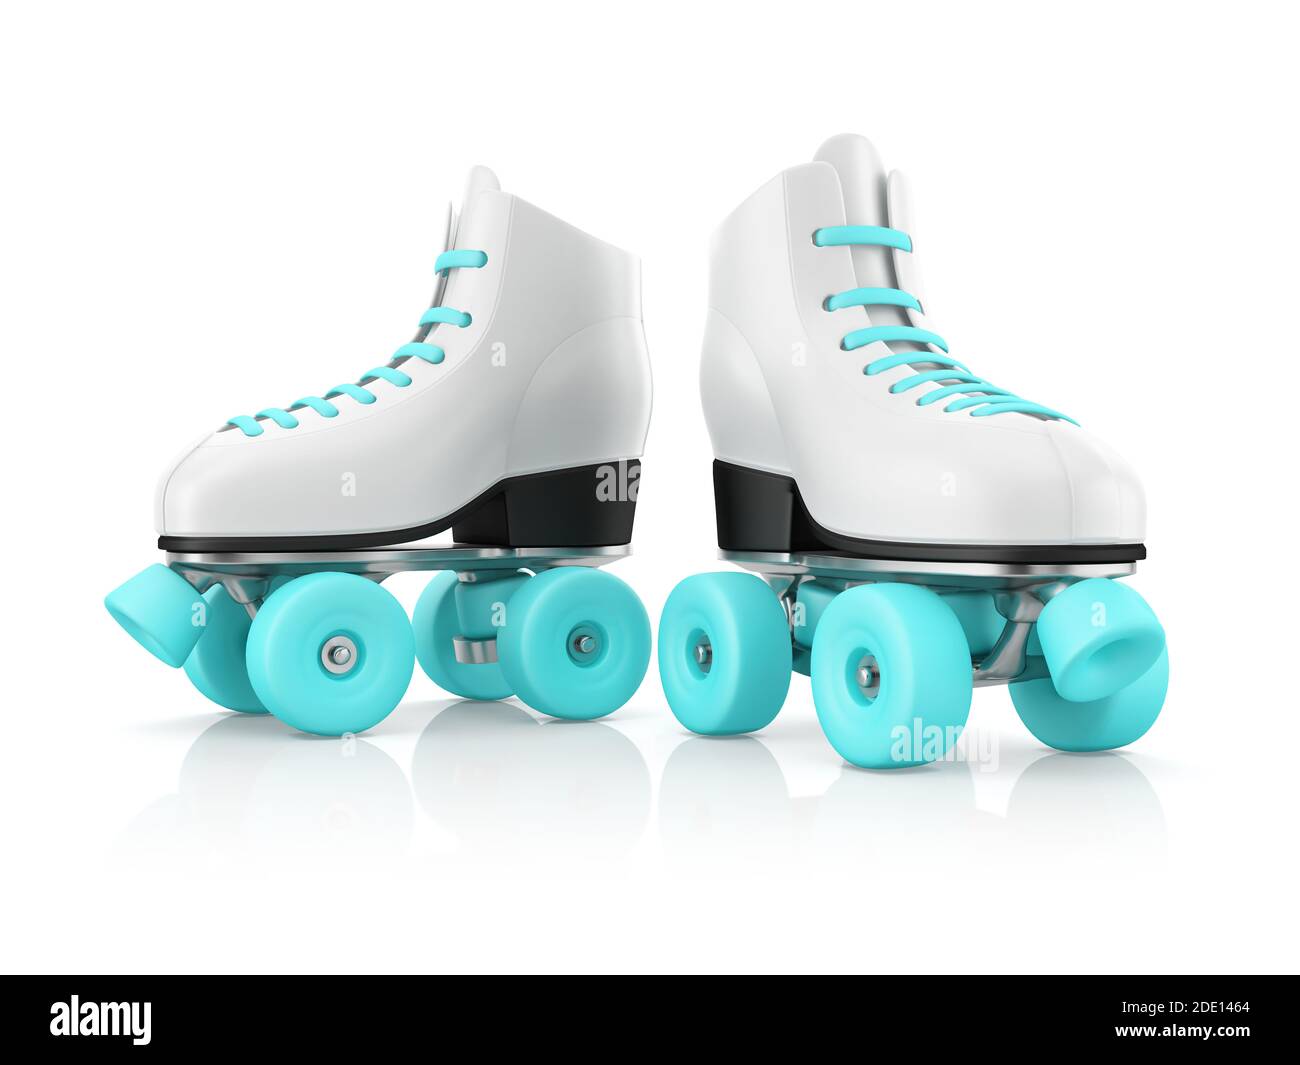 Roller skates, illustration Stock Photo